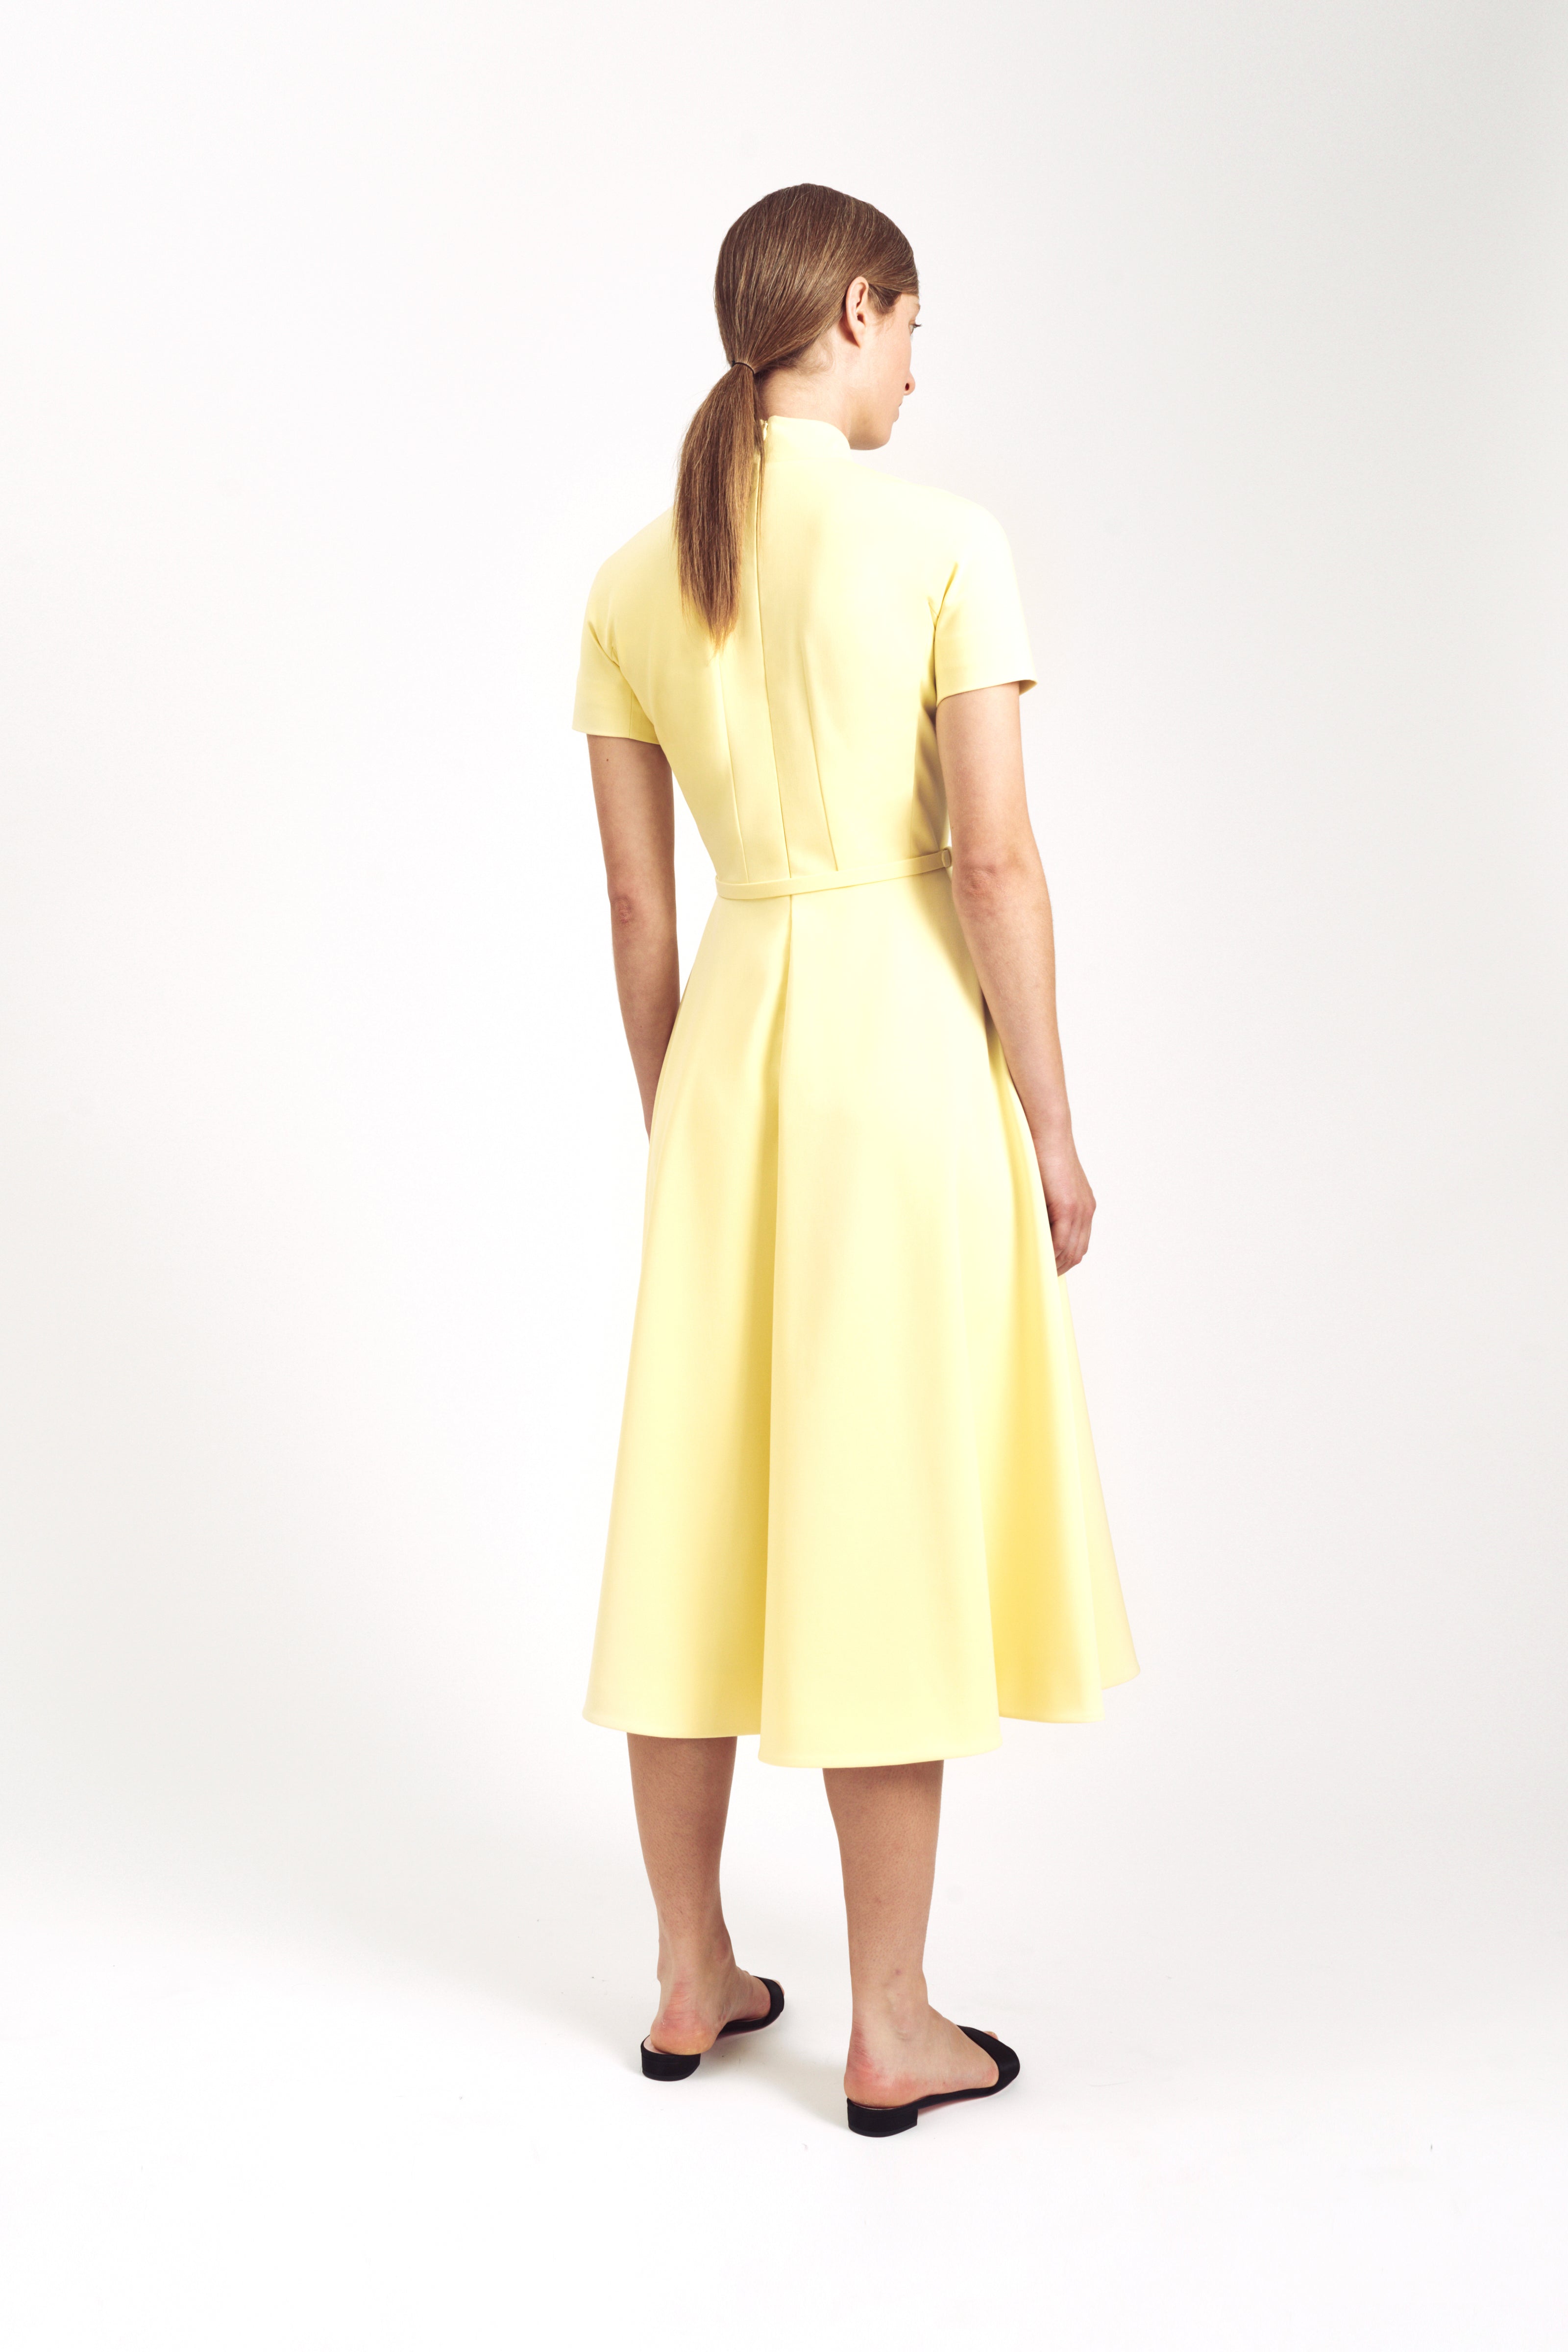 The Cara Dress in Lemon Yellow